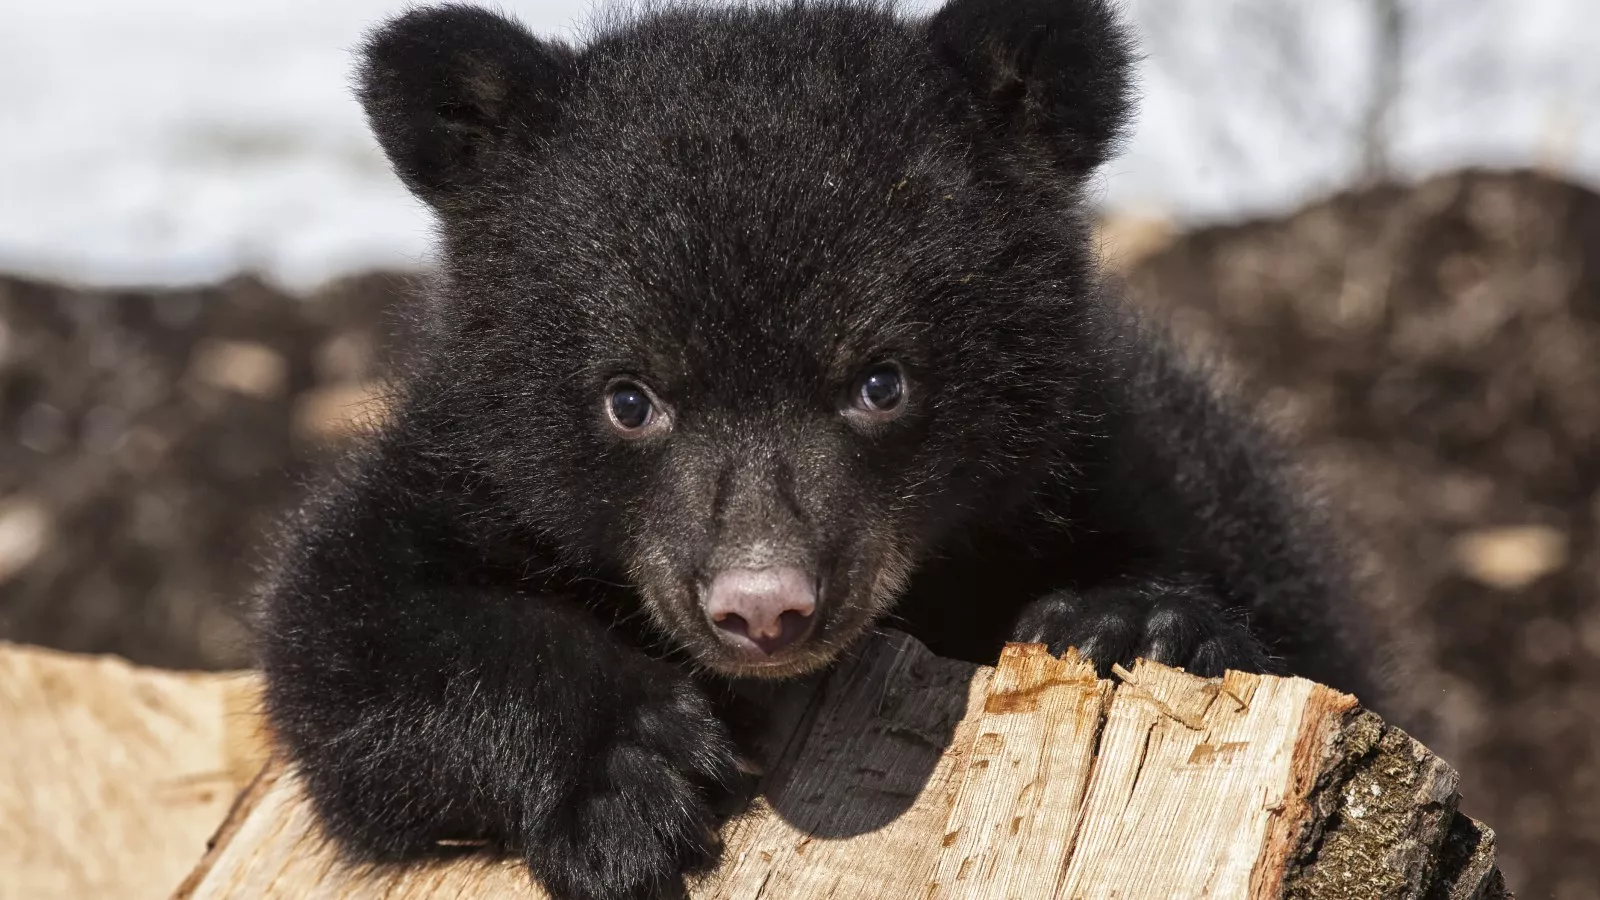 https://d.newsweek.com/en/full/2200390/black-bear-cub.webp?w=1600&h=900&q=88&f=9b358bcb80ad11d7fdabad0b7f1c24a7